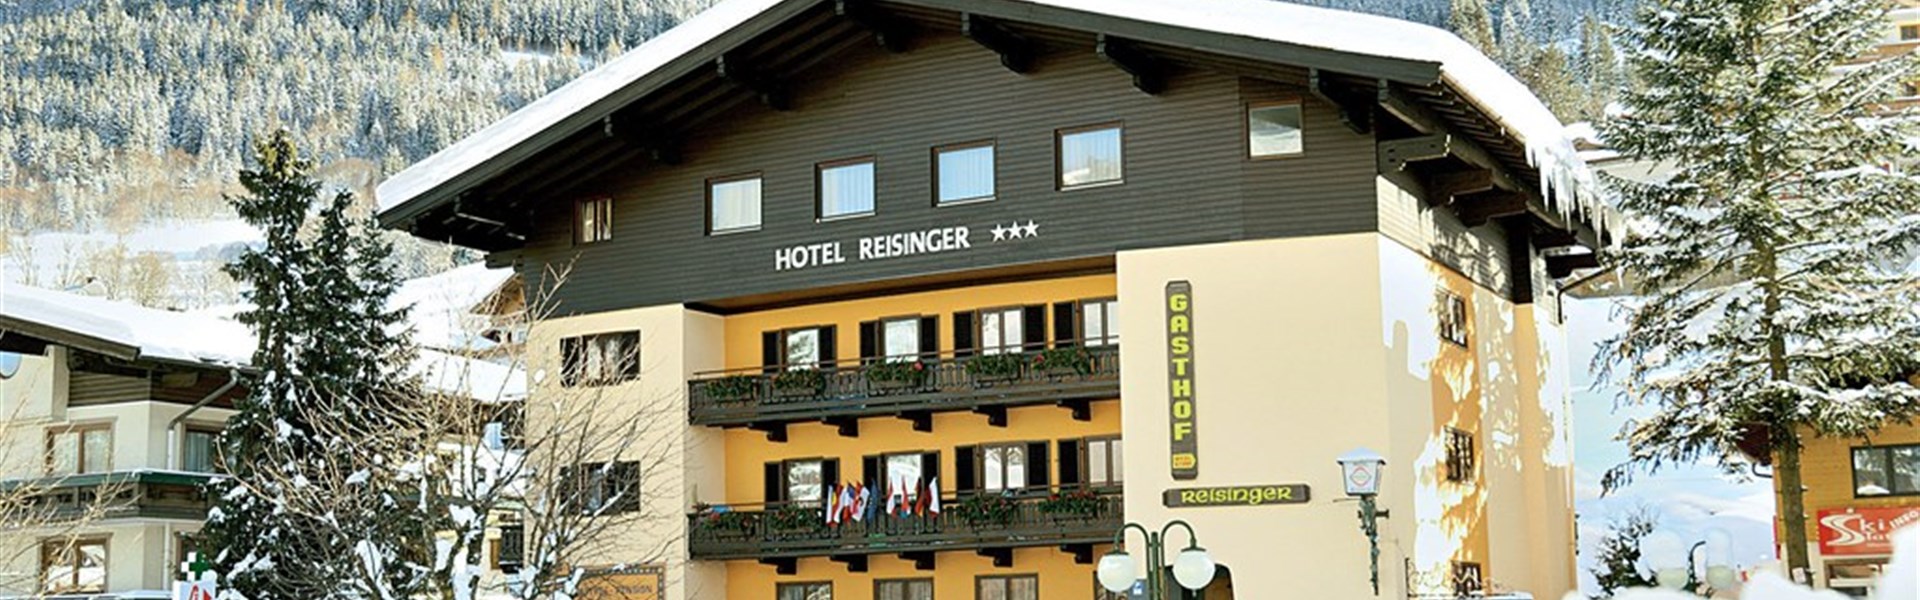 Marco Polo - Hotel Reisinger (W) - 